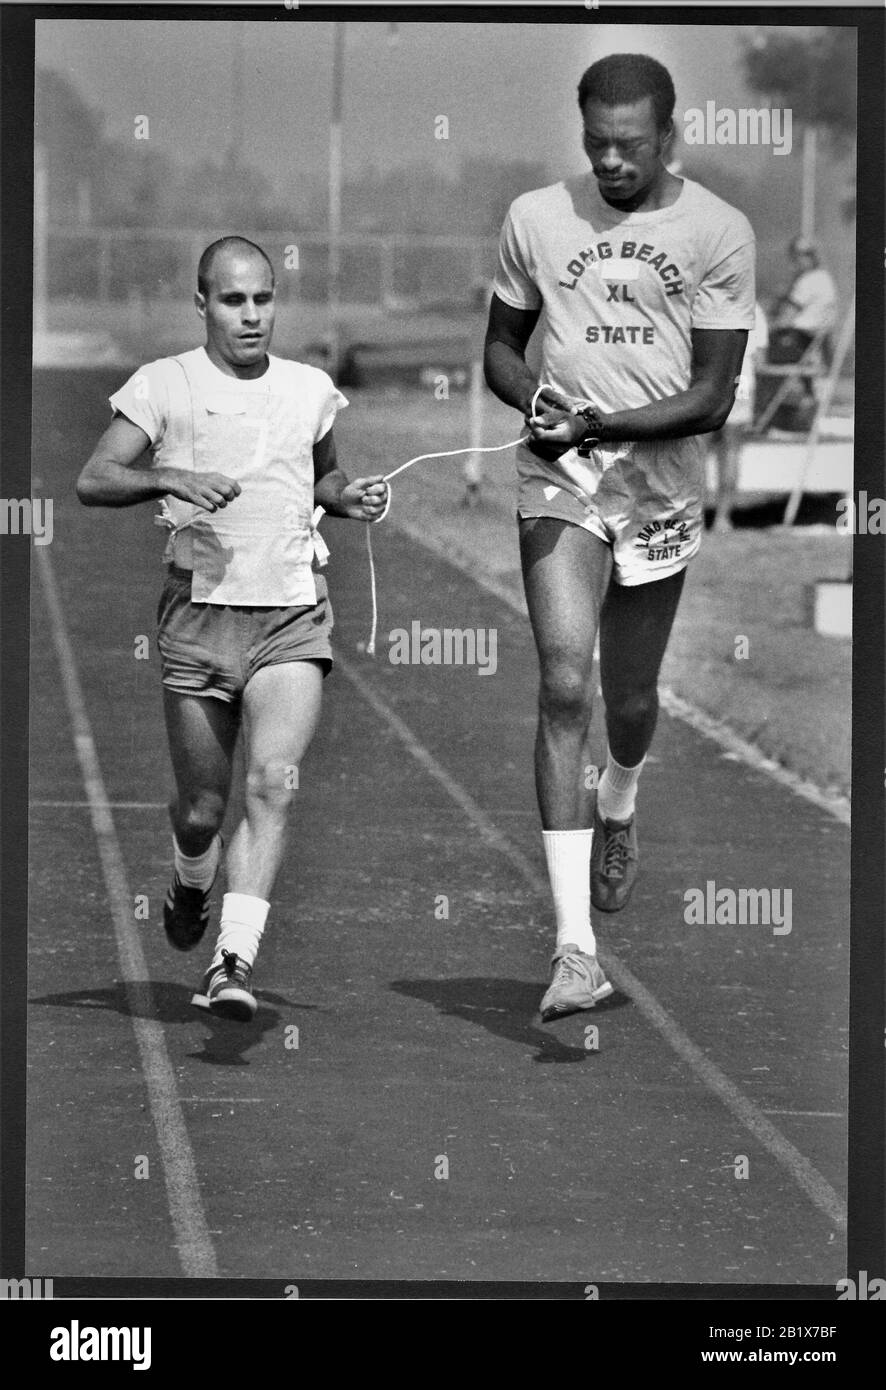 Sehender Läufer führt durch eine Schnur einen Läufer, der ist Blind, aber ein Sportler, der für ein Rennen mit einem trainiert Freund Stockfoto